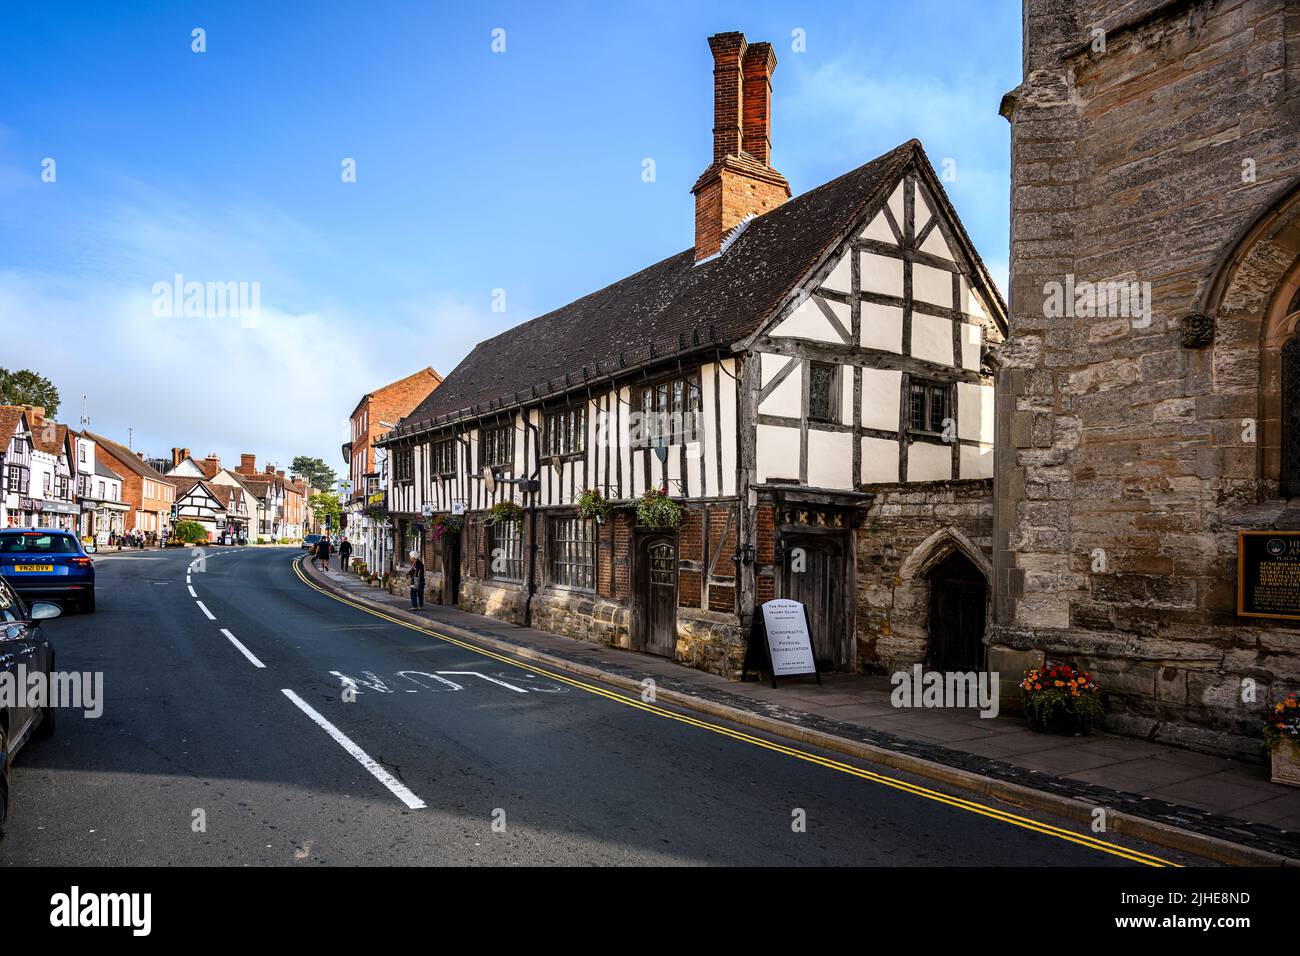 Die guildhall 15 Jahrhundert Holz Fachwerk Eiche gerahmte Gebäude High Street Henley in Arden Warwickshire England Großbritannien Stockfoto